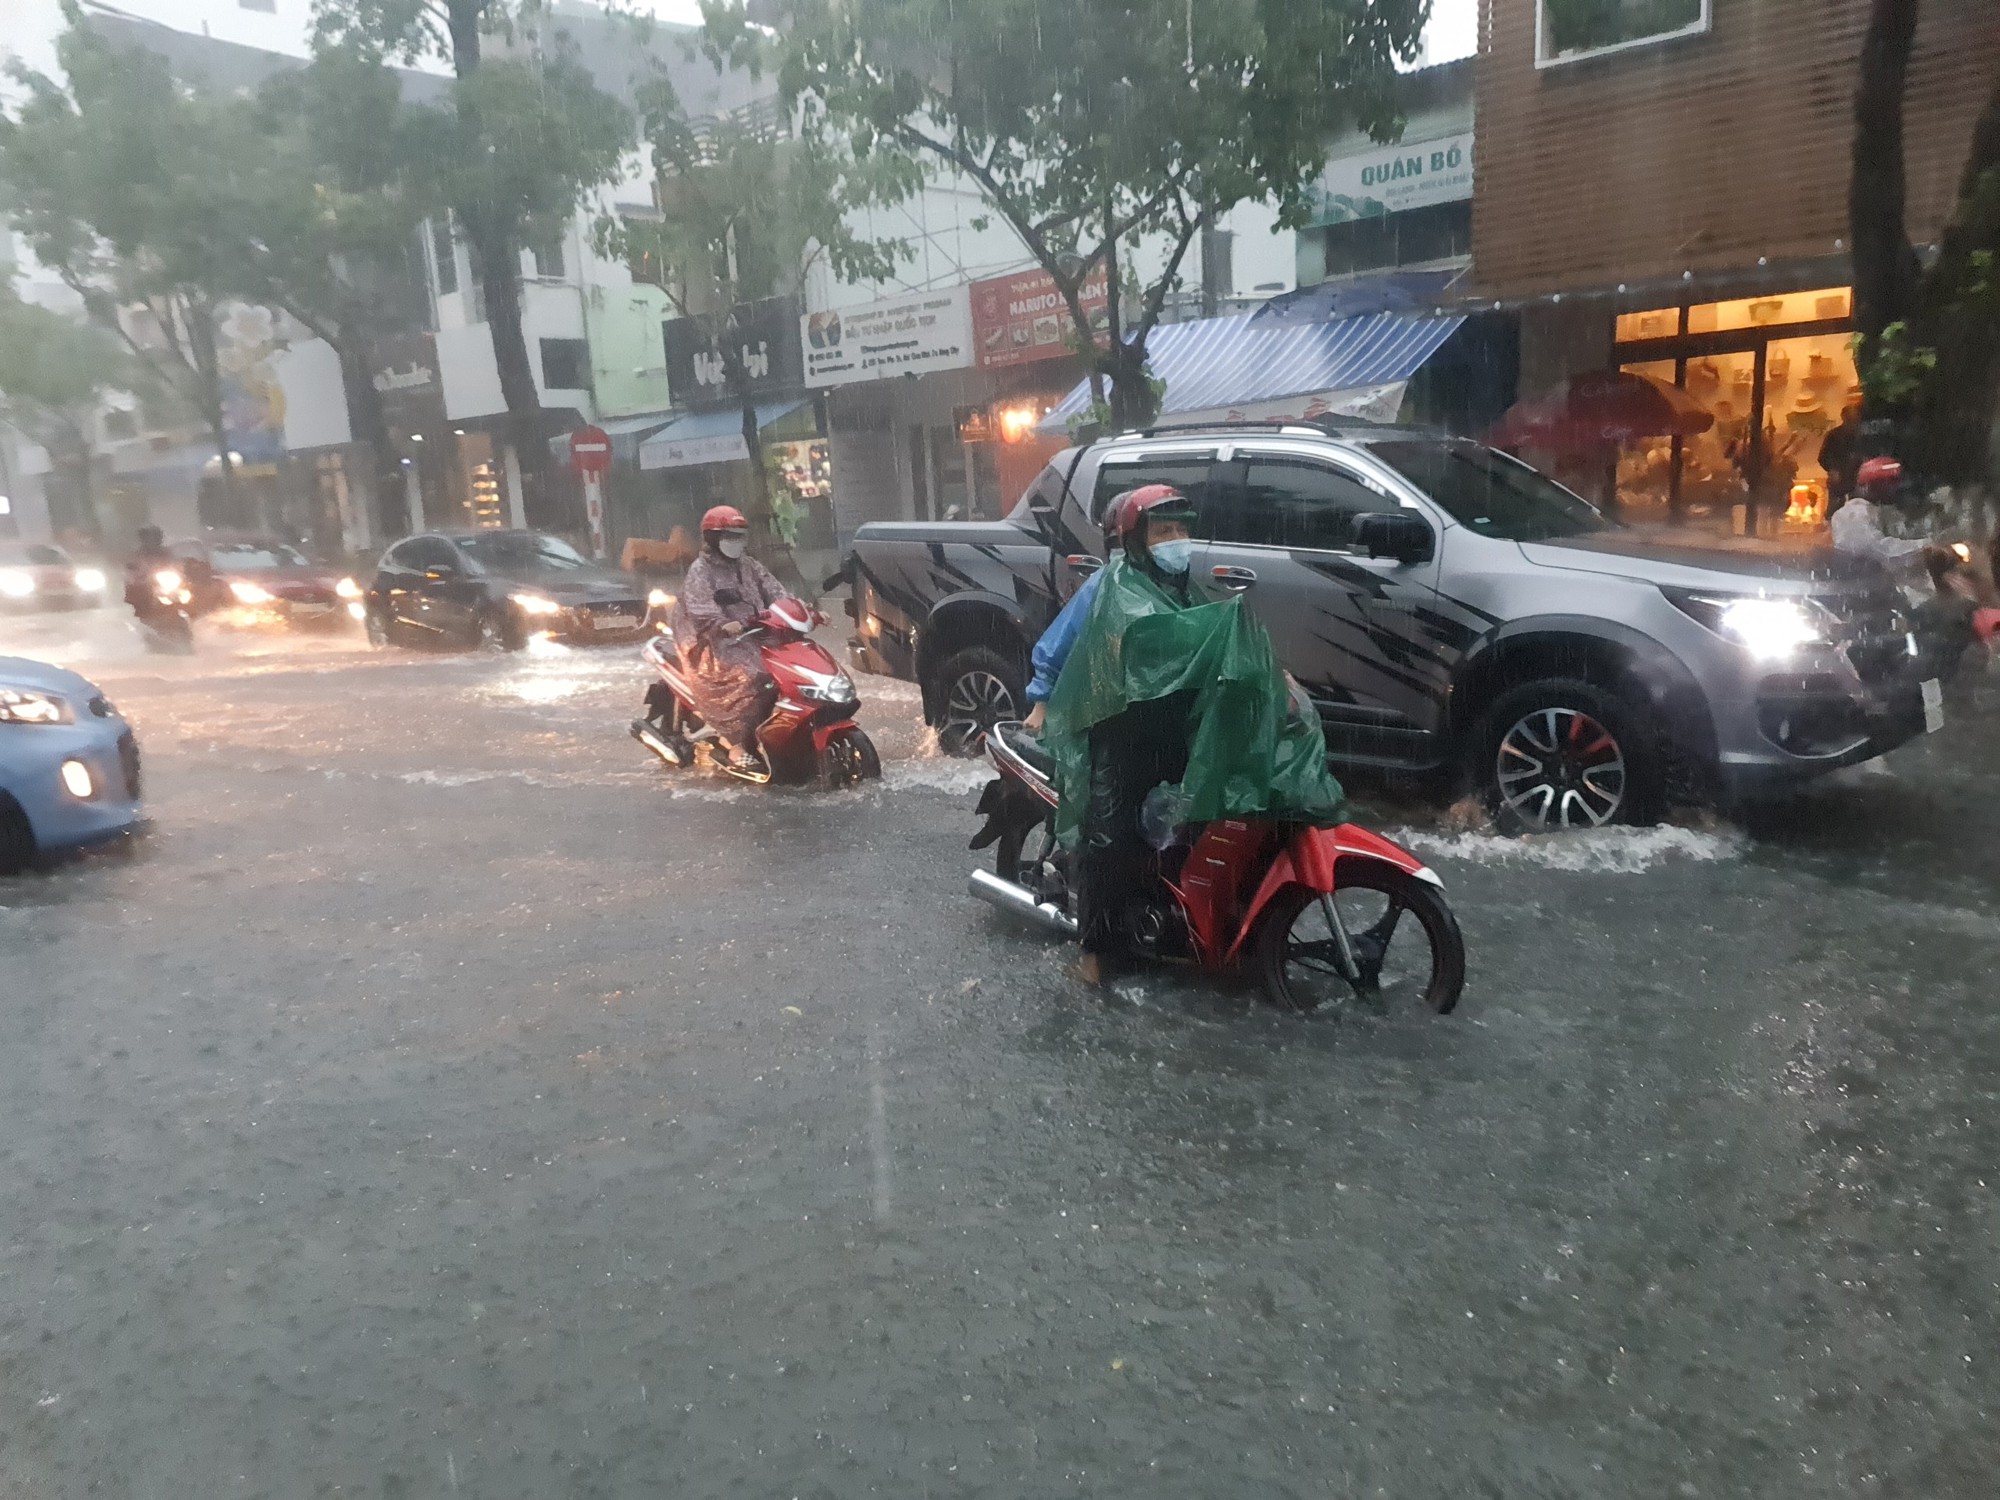 Bão số 5 gây mưa lớn, đường phố Đà Nẵng ngập, 2 tàu cá Khánh Hòa bị chìm  - Ảnh 6.